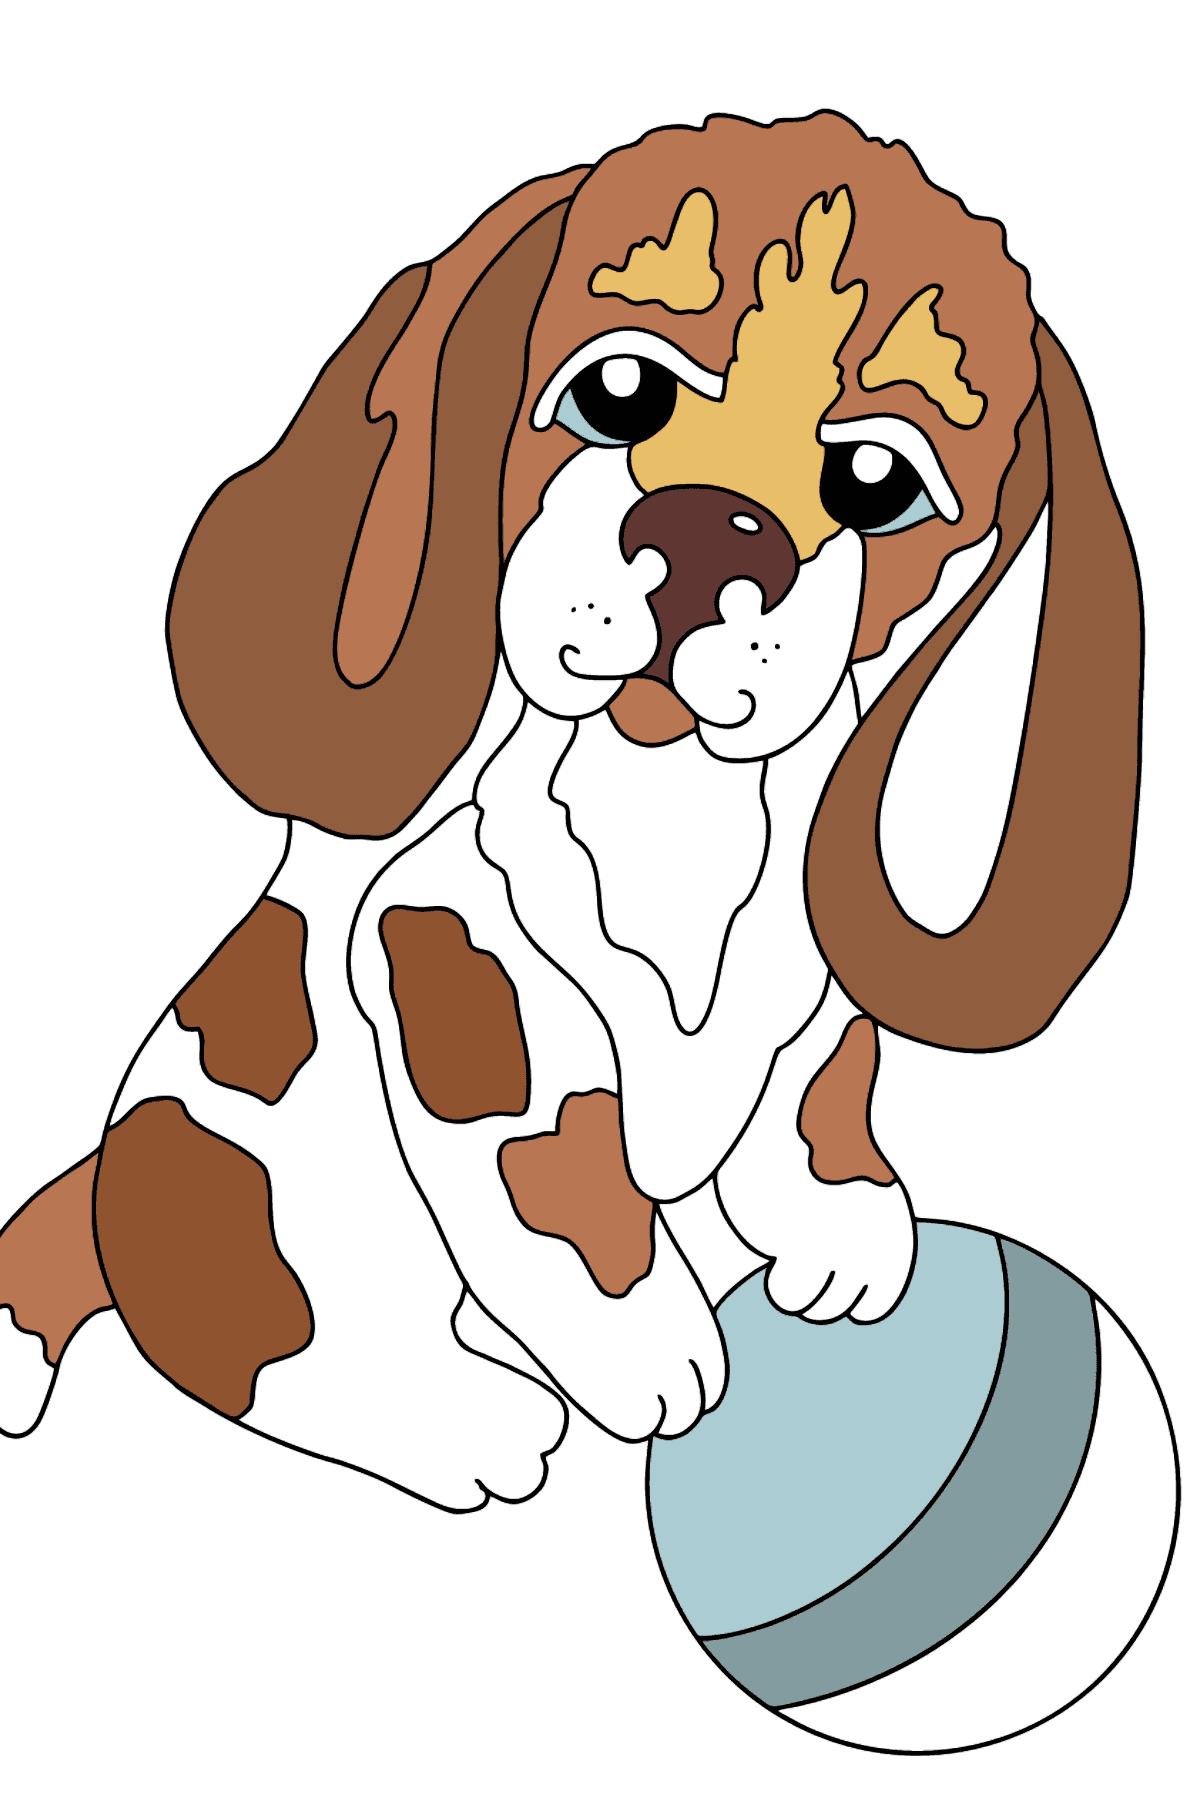 Desenho de cachorrinho para colorir - Imagens para Colorir para Crianças